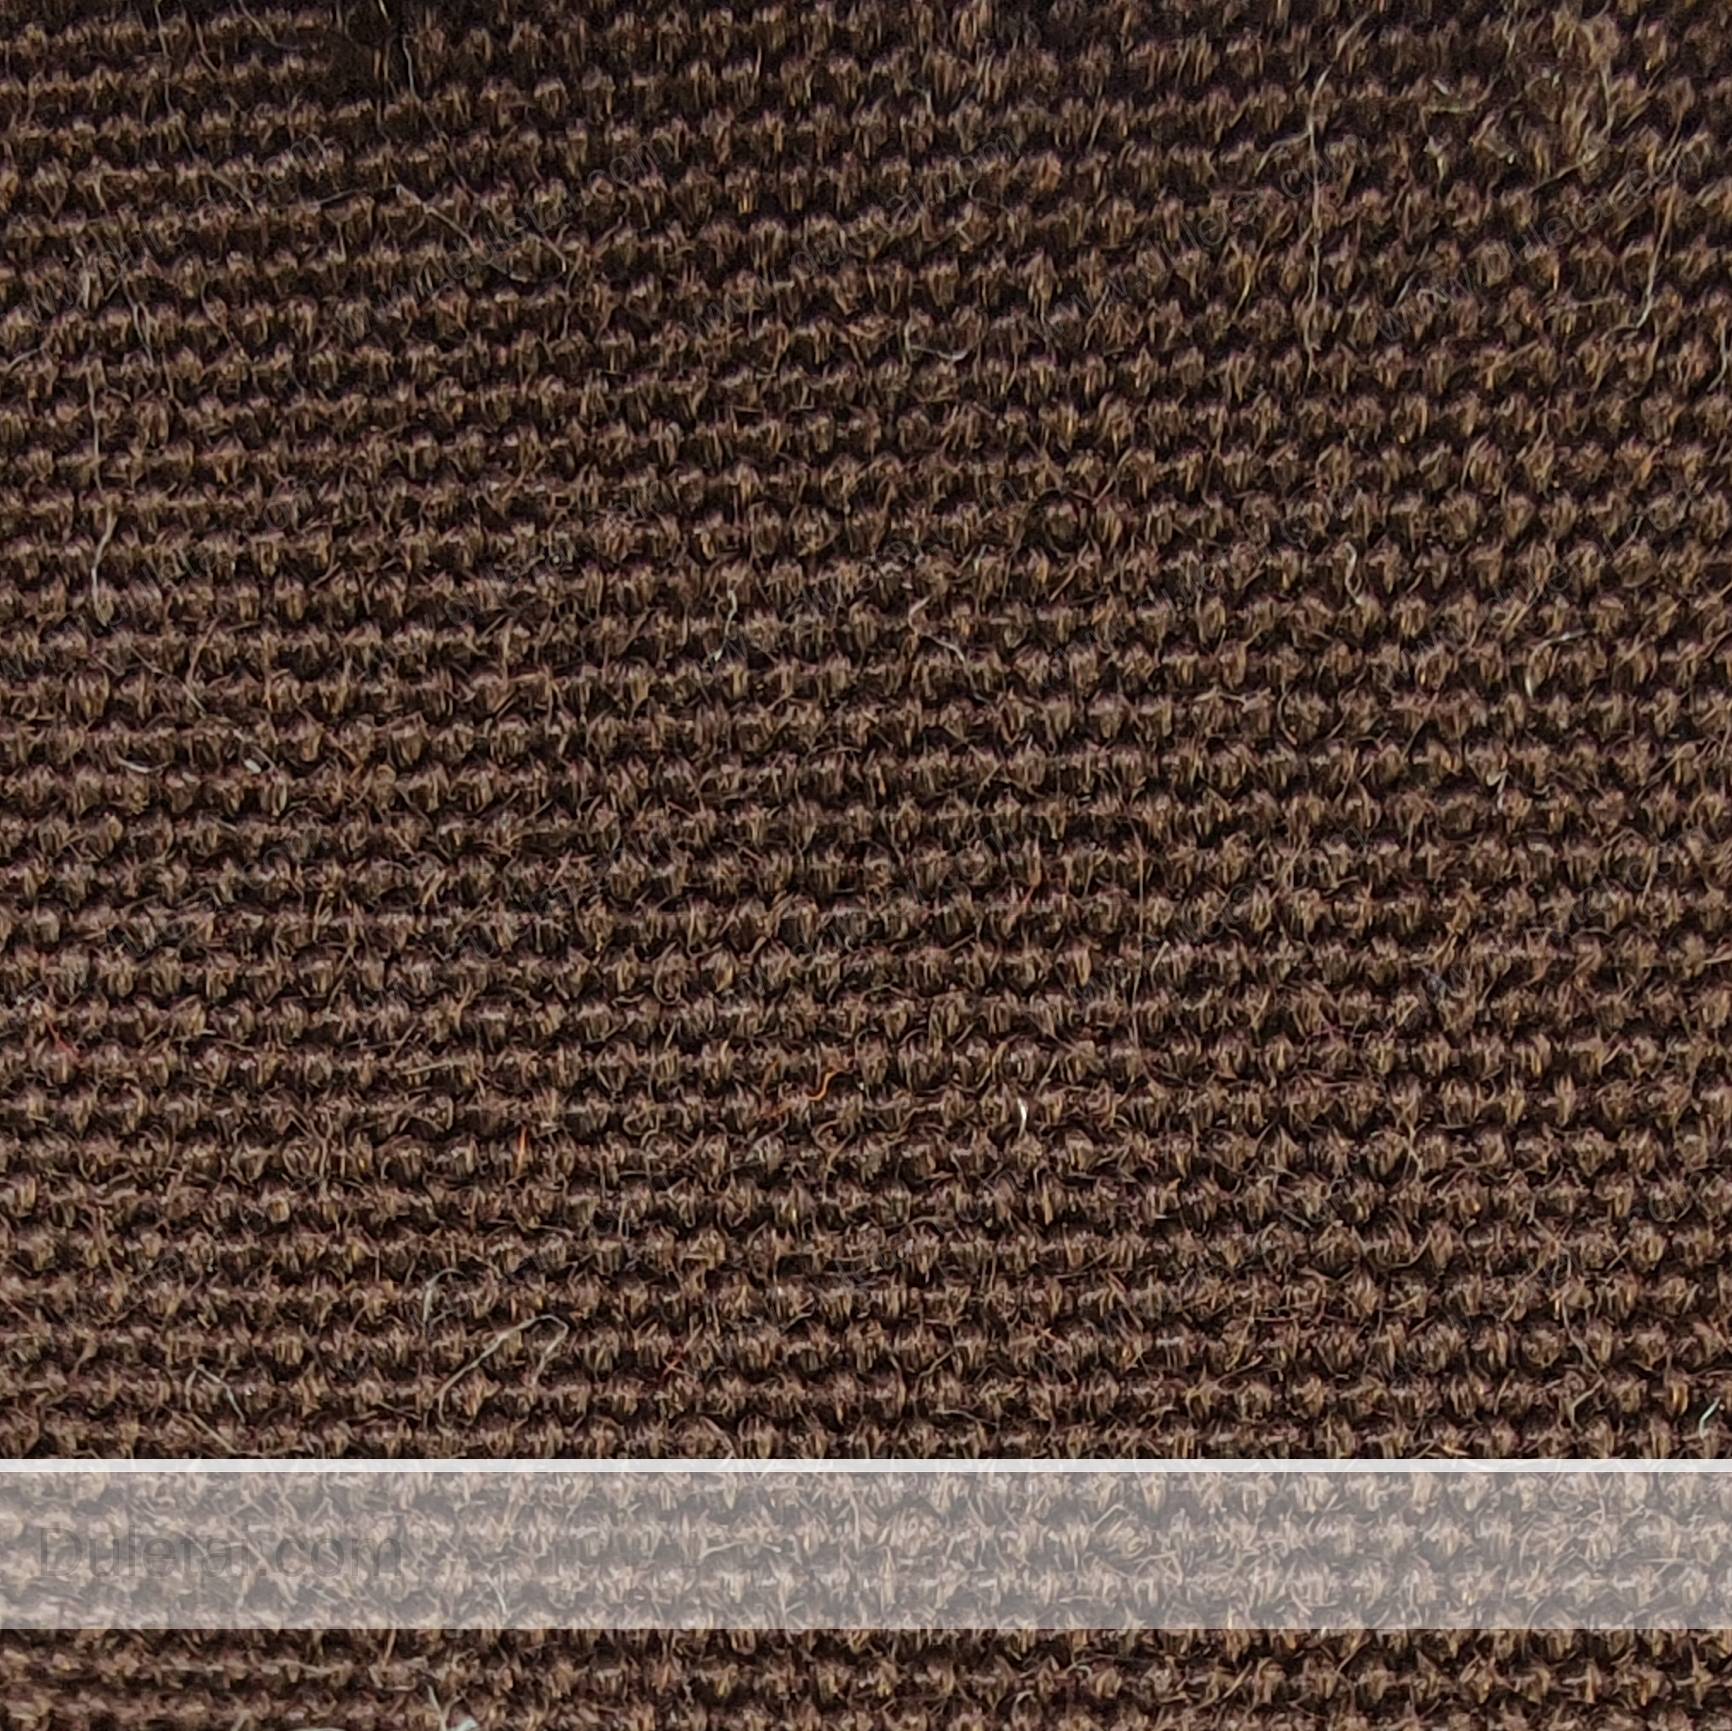 acrylic awning fabric